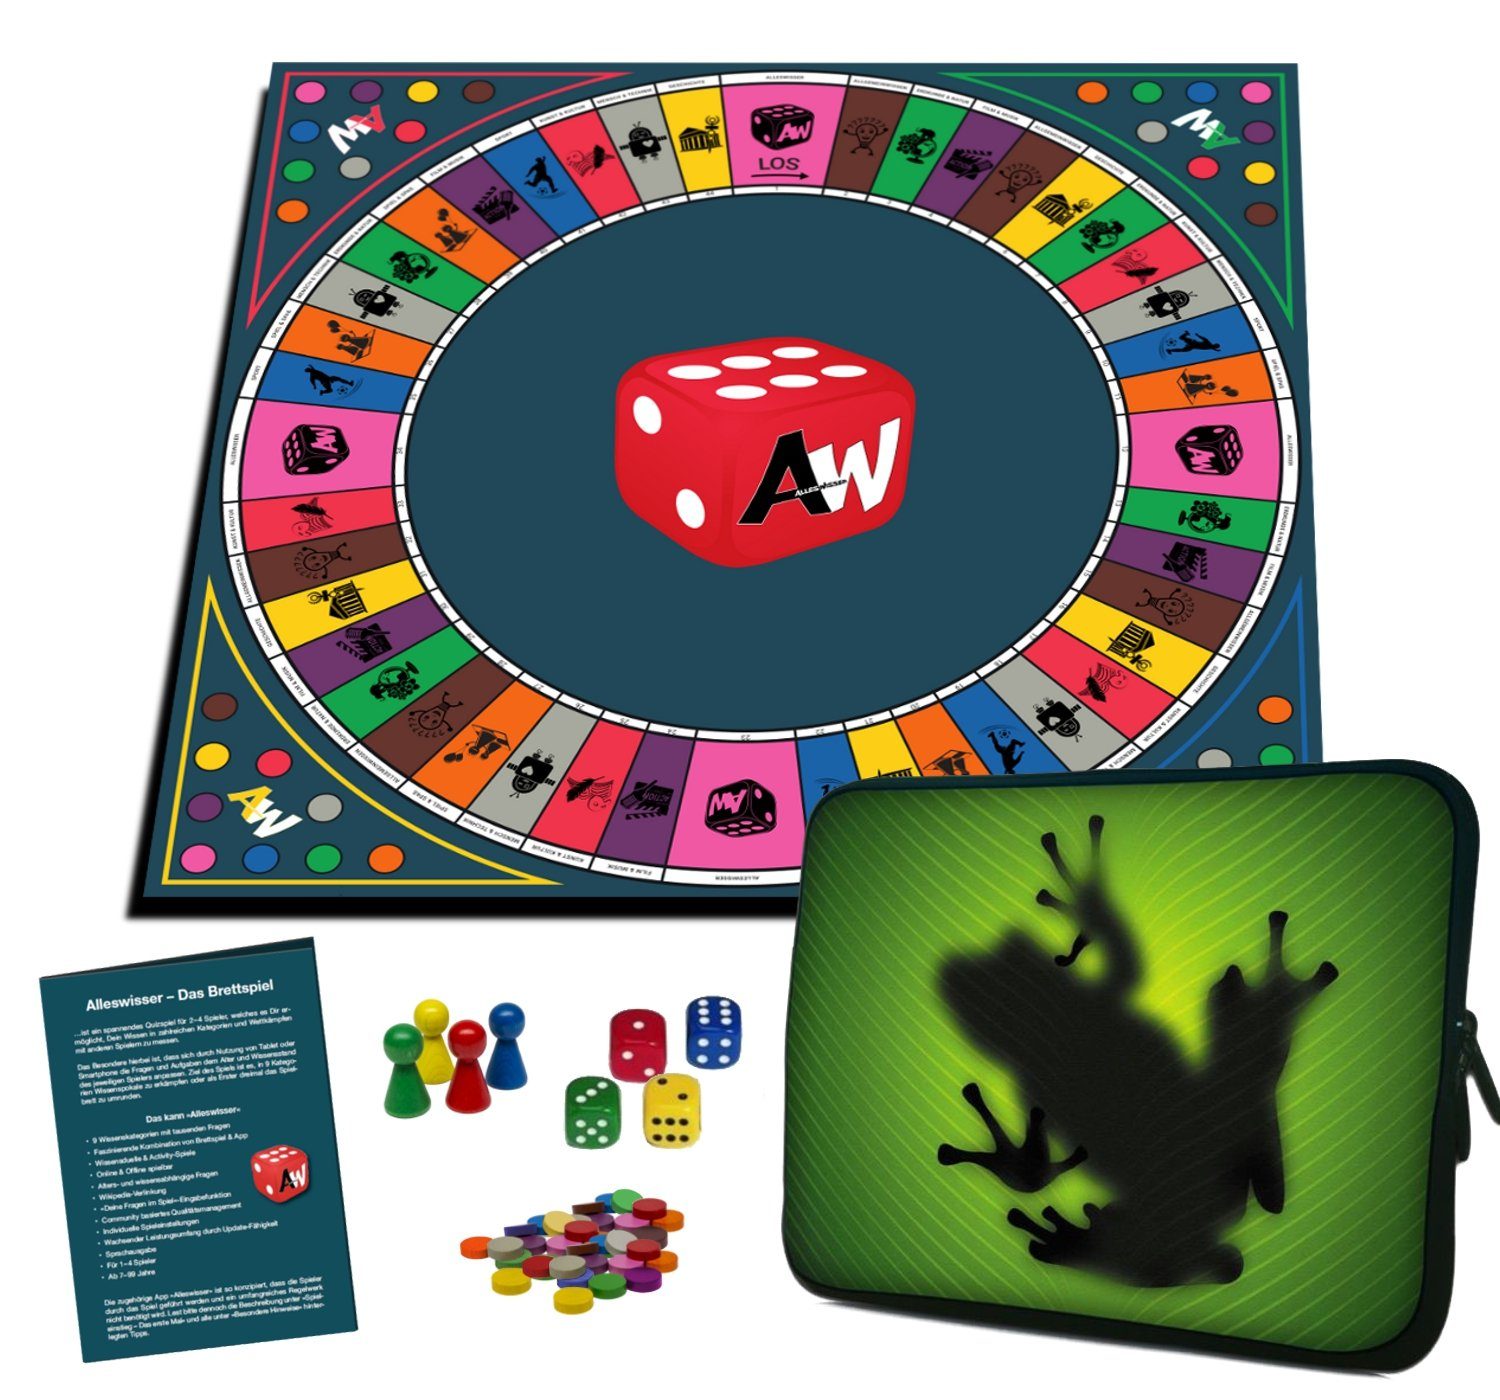 Wissens-, Frosch mit Das Android App Spiel, ALLESWISSER Alleswisser Brettspiel Interaktives für - Familienspiel Quiz-, & iOS Natur